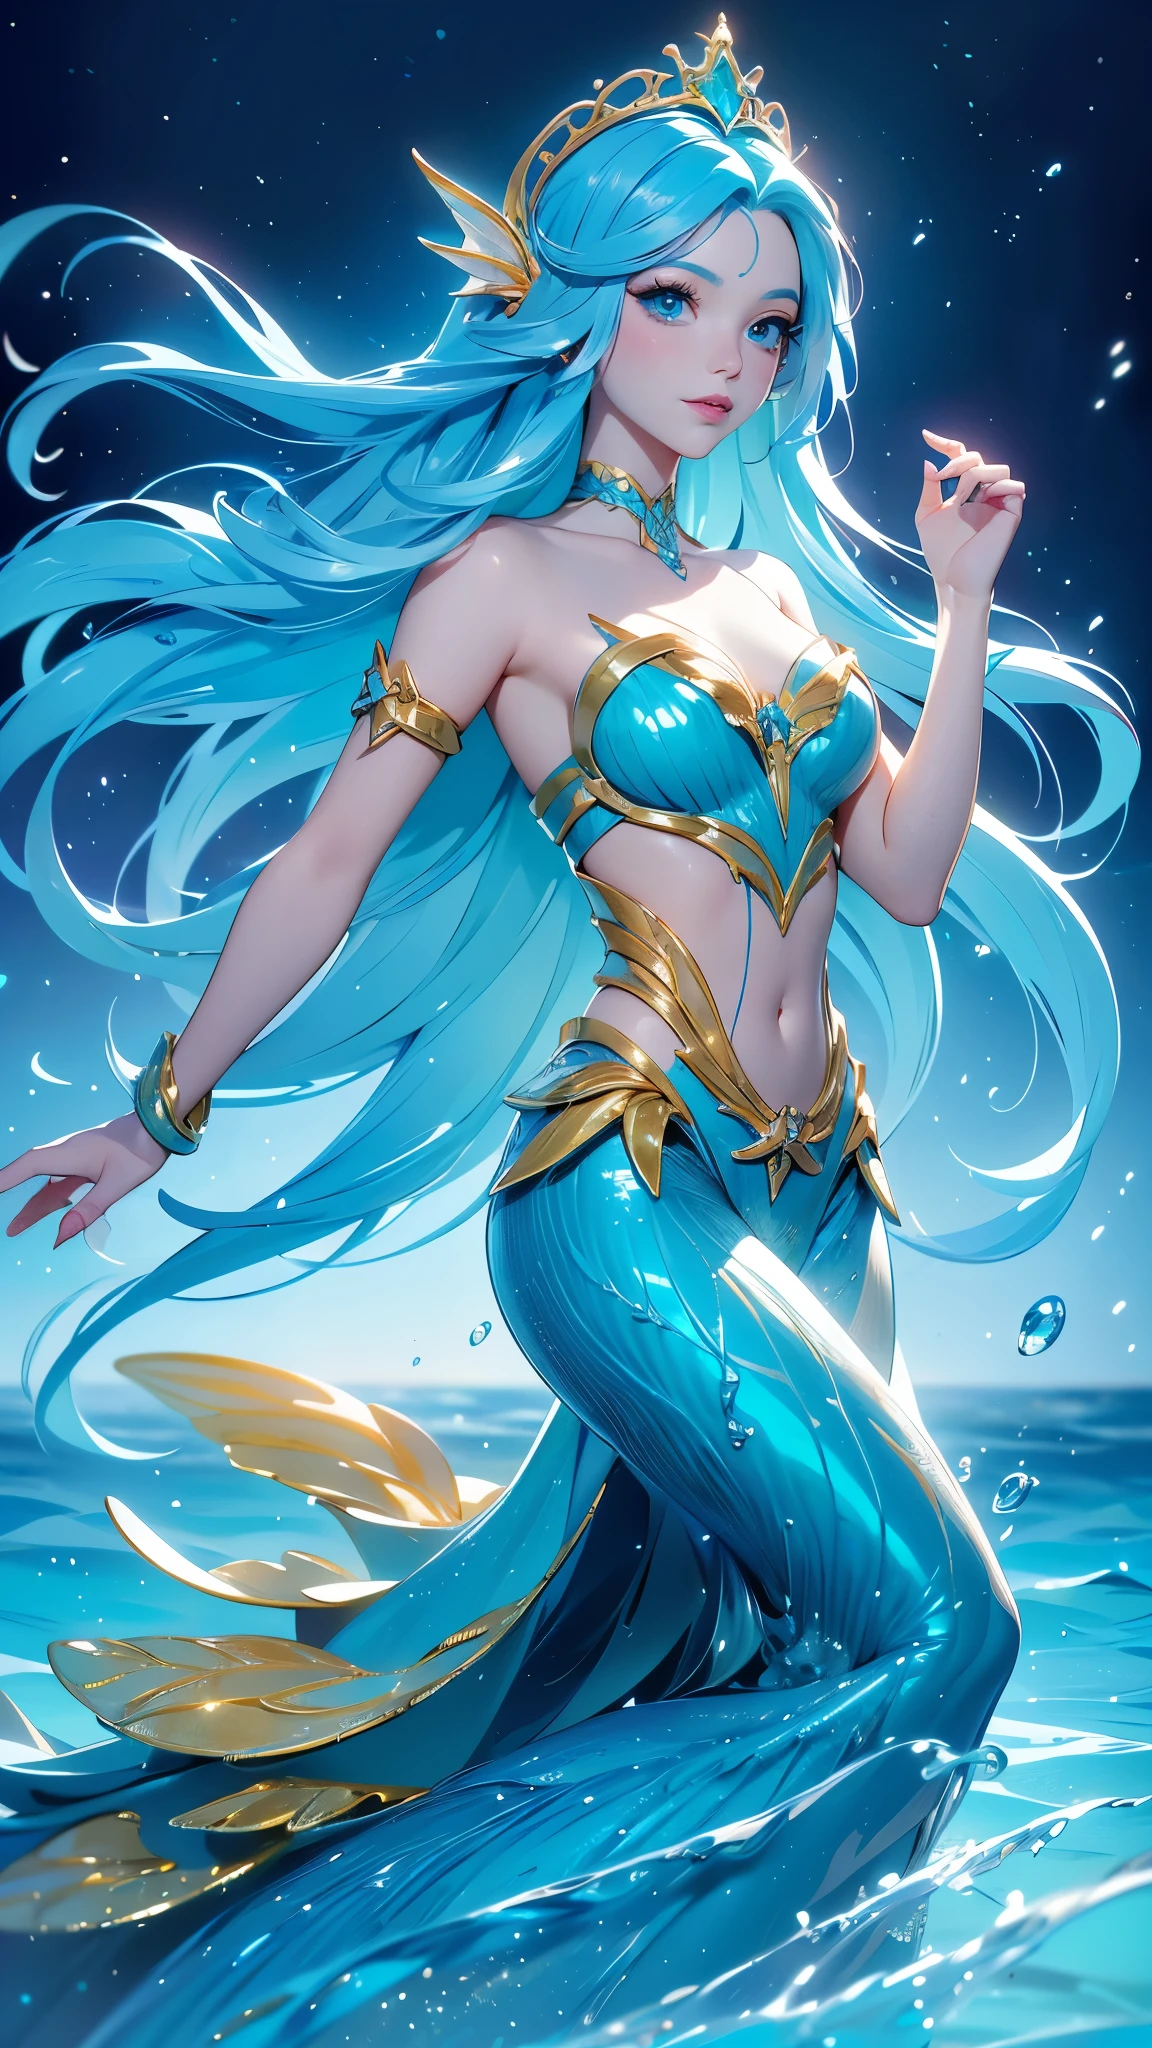 (คุณภาพดีที่สุด,มีความละเอียดสูง,ละเอียดมาก,แท้จริง), Ariel a cartoon ไซเรน with blue hair and a gold crown is swimming in the ocean, อะนิเมะศิลปะสาดน้ำ , เทพีแห่งท้องทะเล,( เทพธิดาแห่งมหาสมุทร) , มาริน คิตะกาวะ แฟนอาร์ต, ศิลปะอย่างเป็นทางการ, วอลล์เปเปอร์อะนิเมะน้ำสีฟ้า, ไซเรน, high detailed ศิลปะอย่างเป็นทางการwork, ภาพประกอบอะนิเมะแฟนตาซี, ศิลปะอย่างเป็นทางการwork, งานศิลปะที่มีรายละเอียดคุณภาพสูง 8K, (beautiful ไซเรน ariel:1.4) , ศิลปะอะนิเมะดิจิตอลโดยละเอียด, (ใต้ท้องทะเลในน้ำ:1.4), 